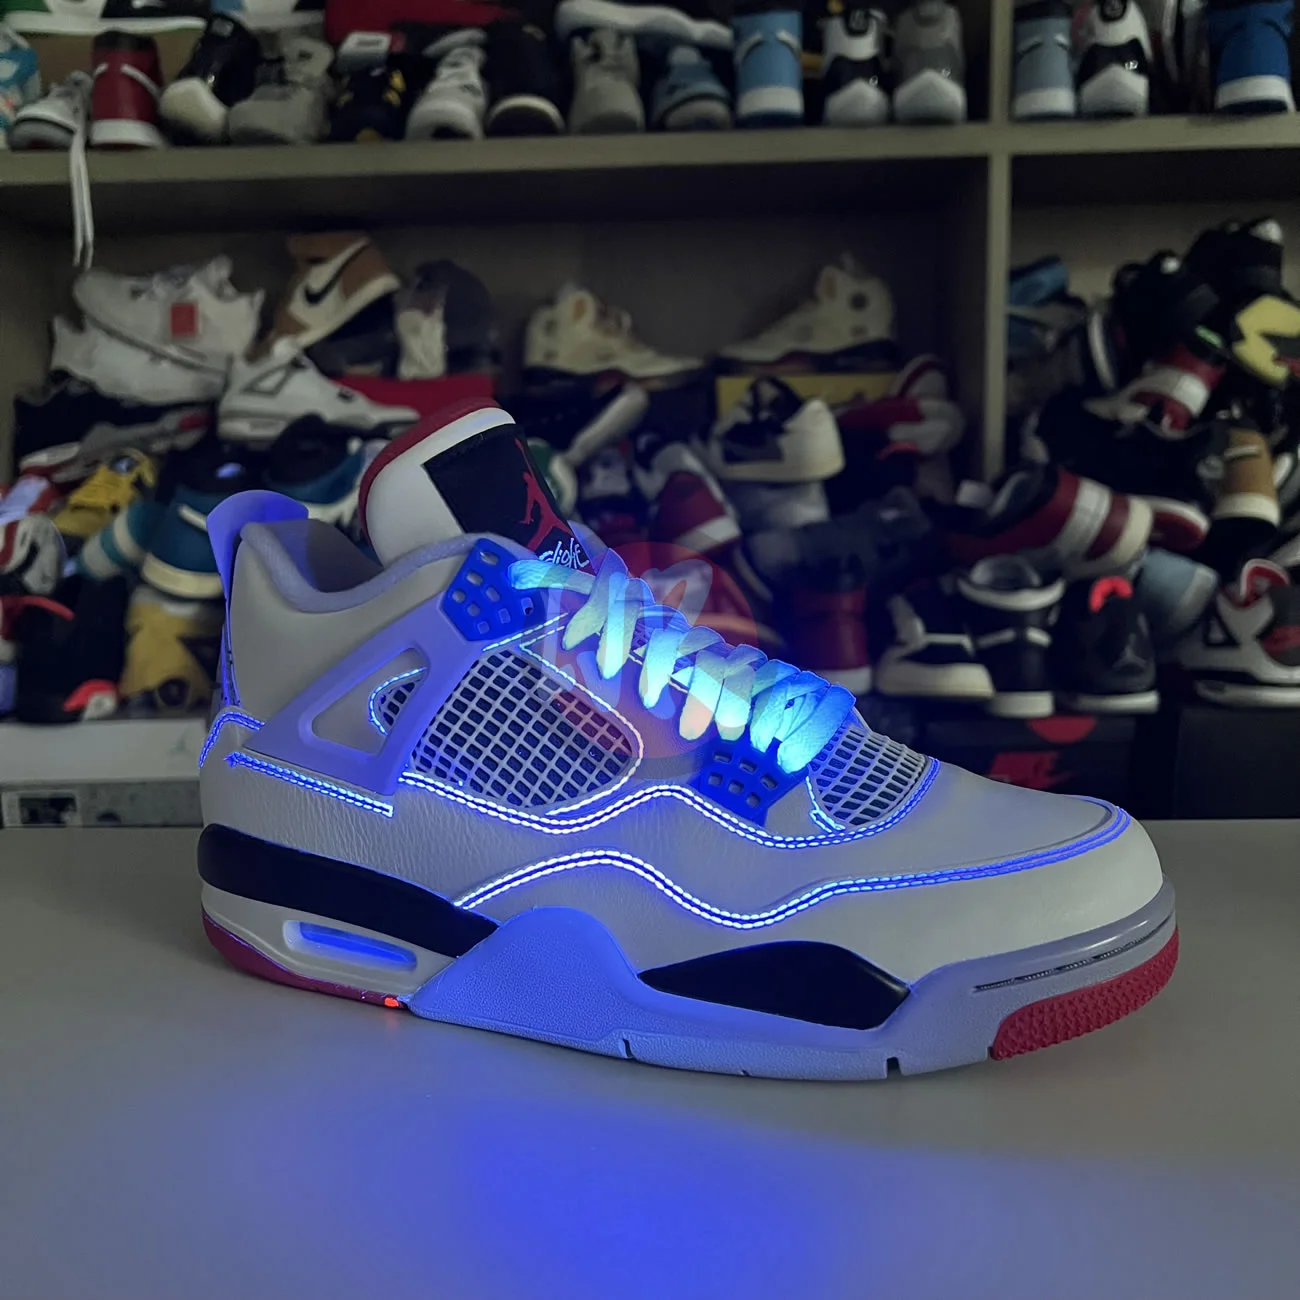 Air Jordan 4 Retro What The Ci1184 146 Ljr Sneakers (8) - bc-ljr.com